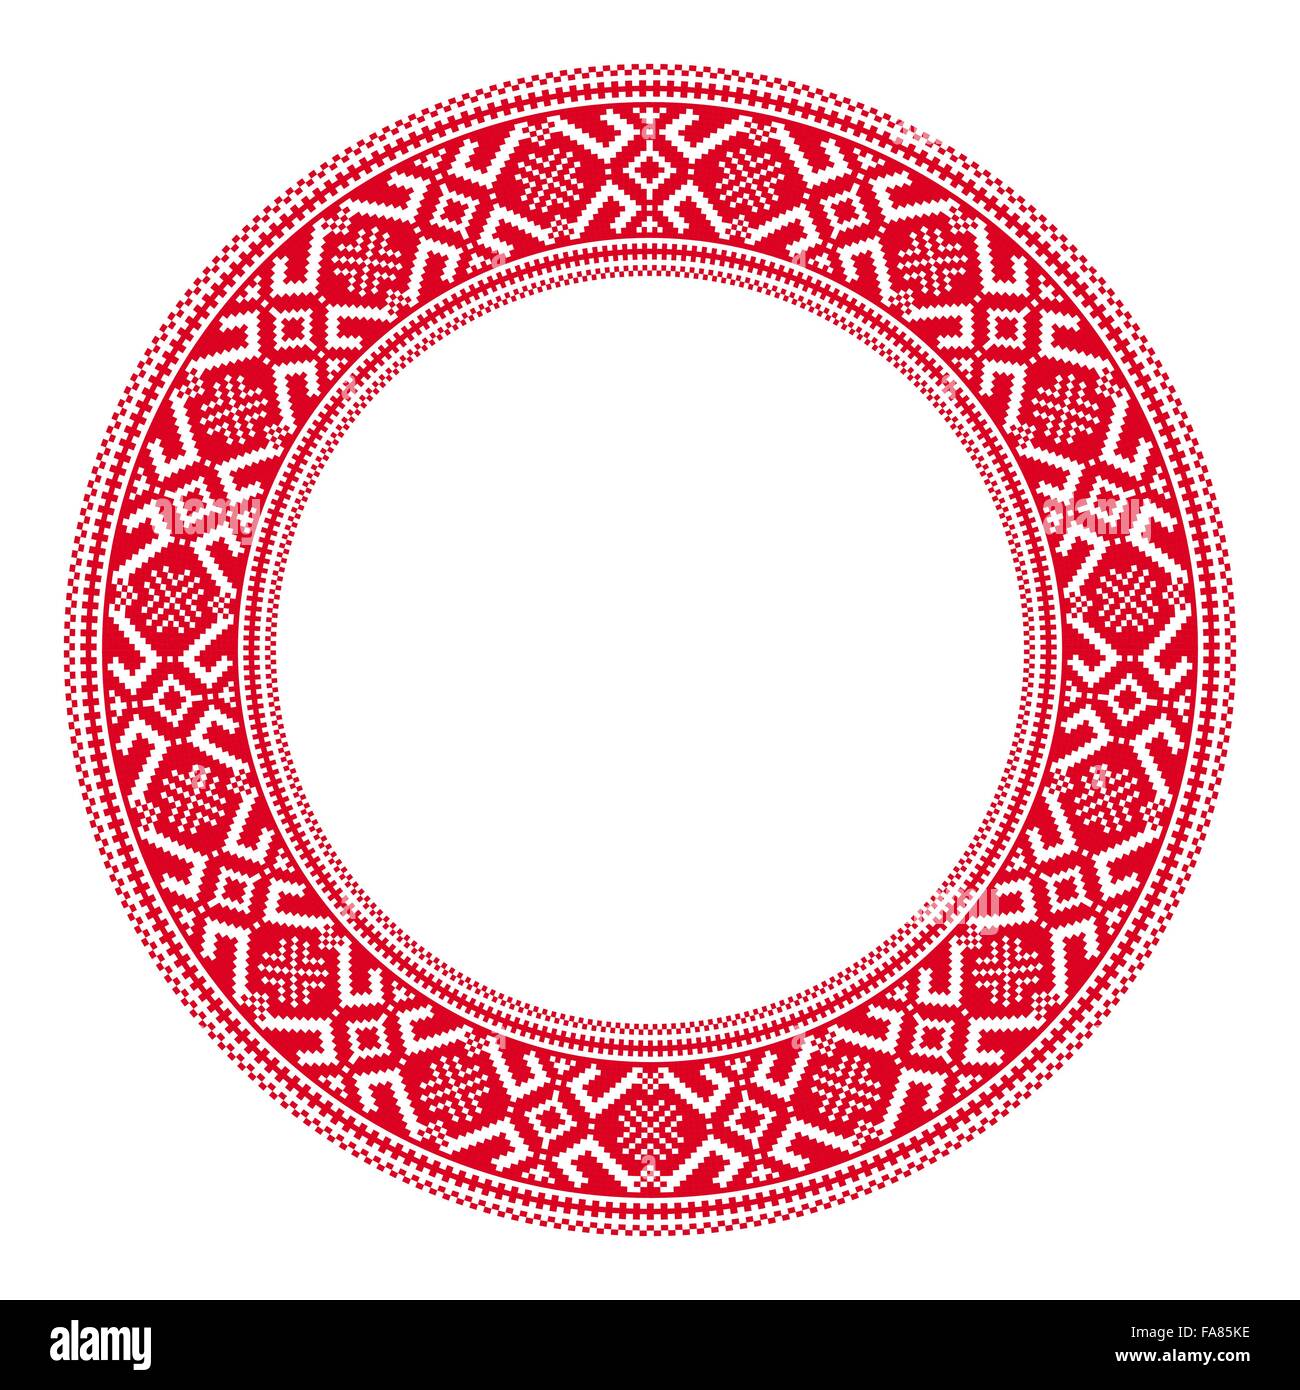 Славянский орнамент по кругу